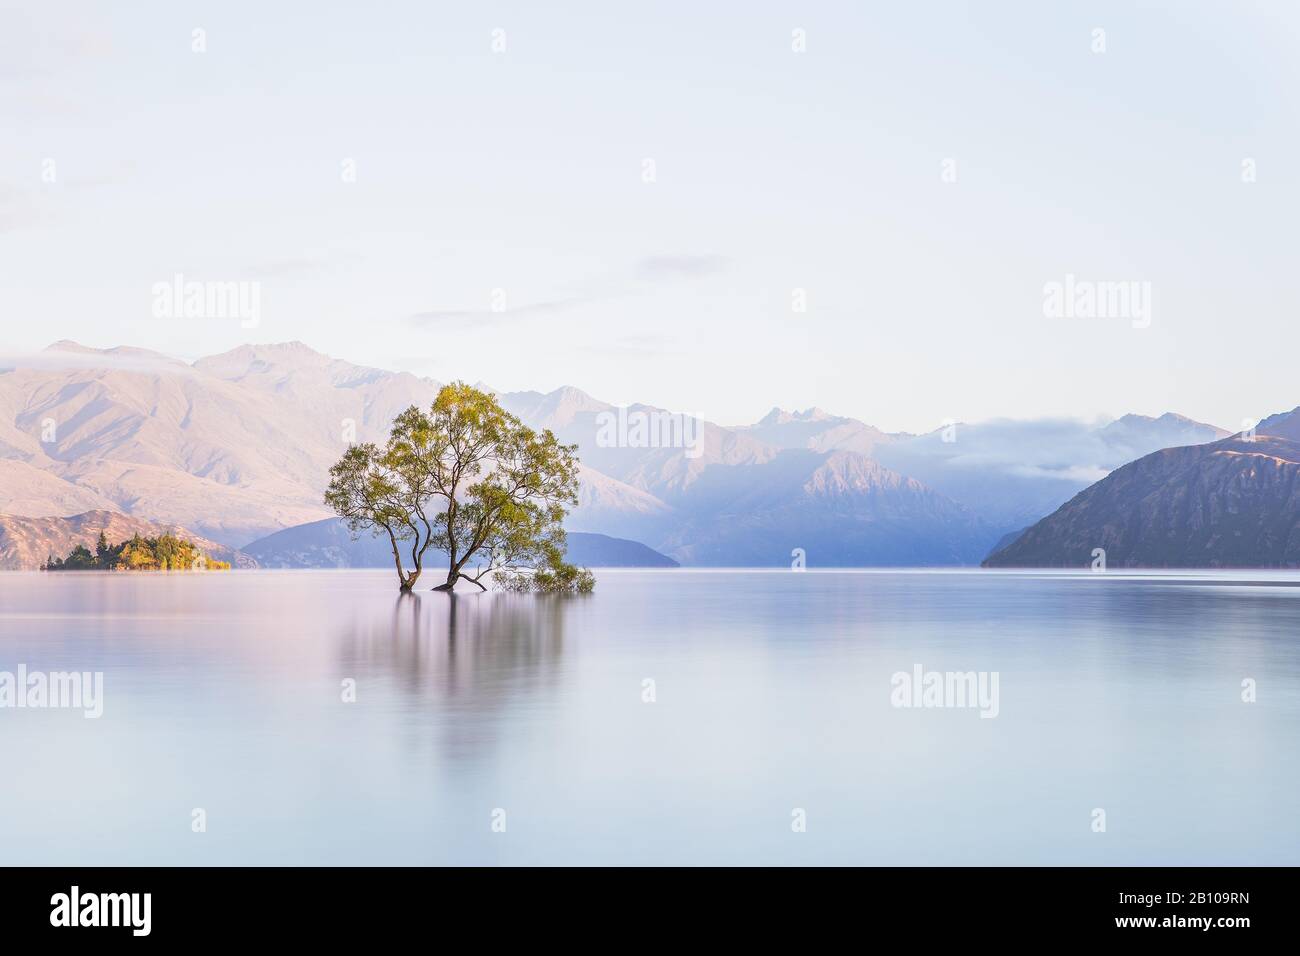 That Wanaka Tree, Lone Tree In Lake, Wanaka Tree in Wanaka, New Zealand. Popular Travel Destination. Scenic view of New Zealand Landscape Stock Photo